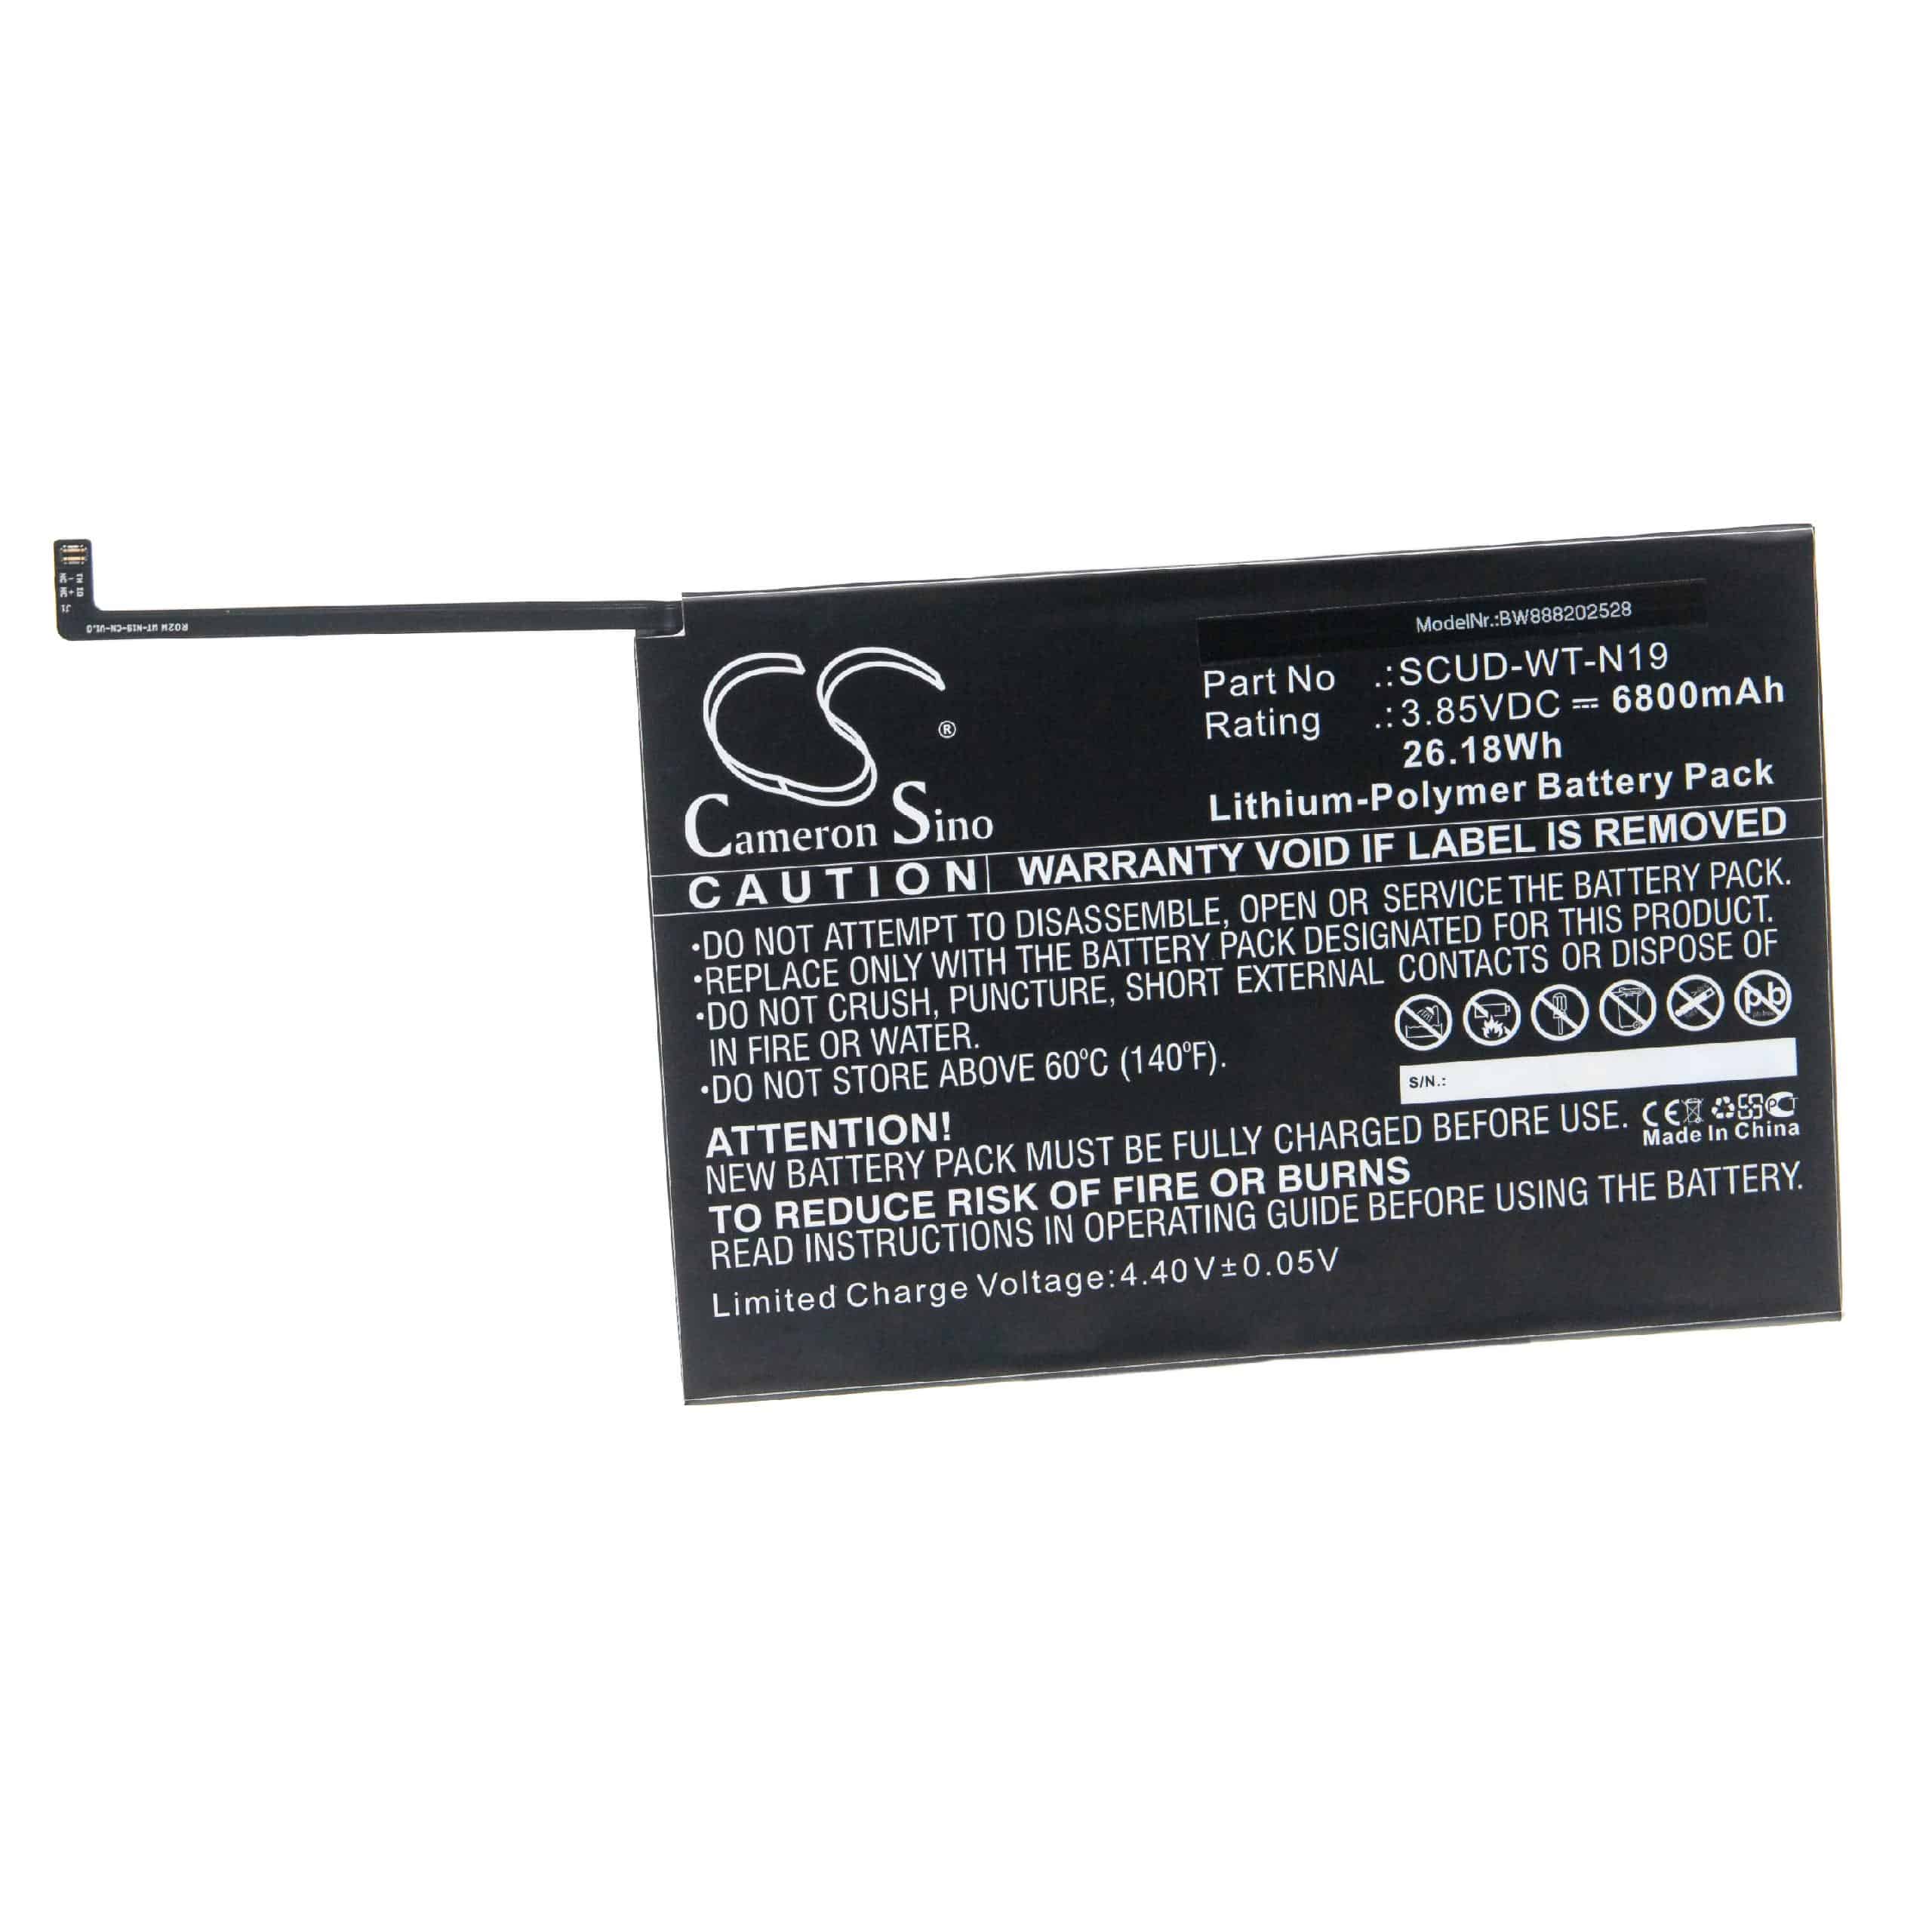 Batterie remplace Samsung SCUD-WT-N19 pour tablette - 6800mAh 3,85V Li-polymère